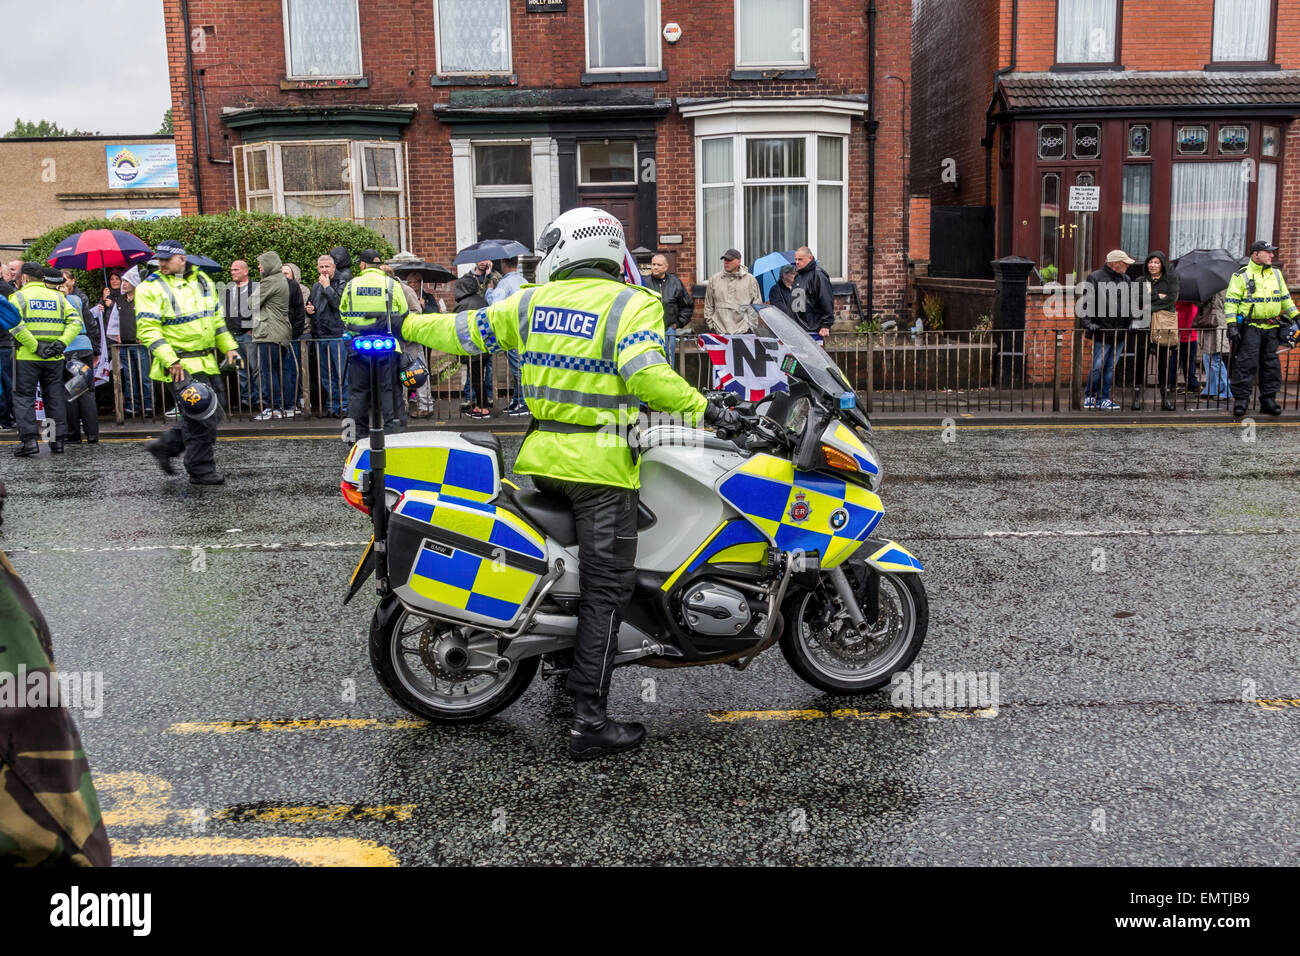 Polizei Motorrad Vorreiter Regie anderen Polizisten im Ordnungsdienst bei einer nationalen front Kundgebung Stockfoto